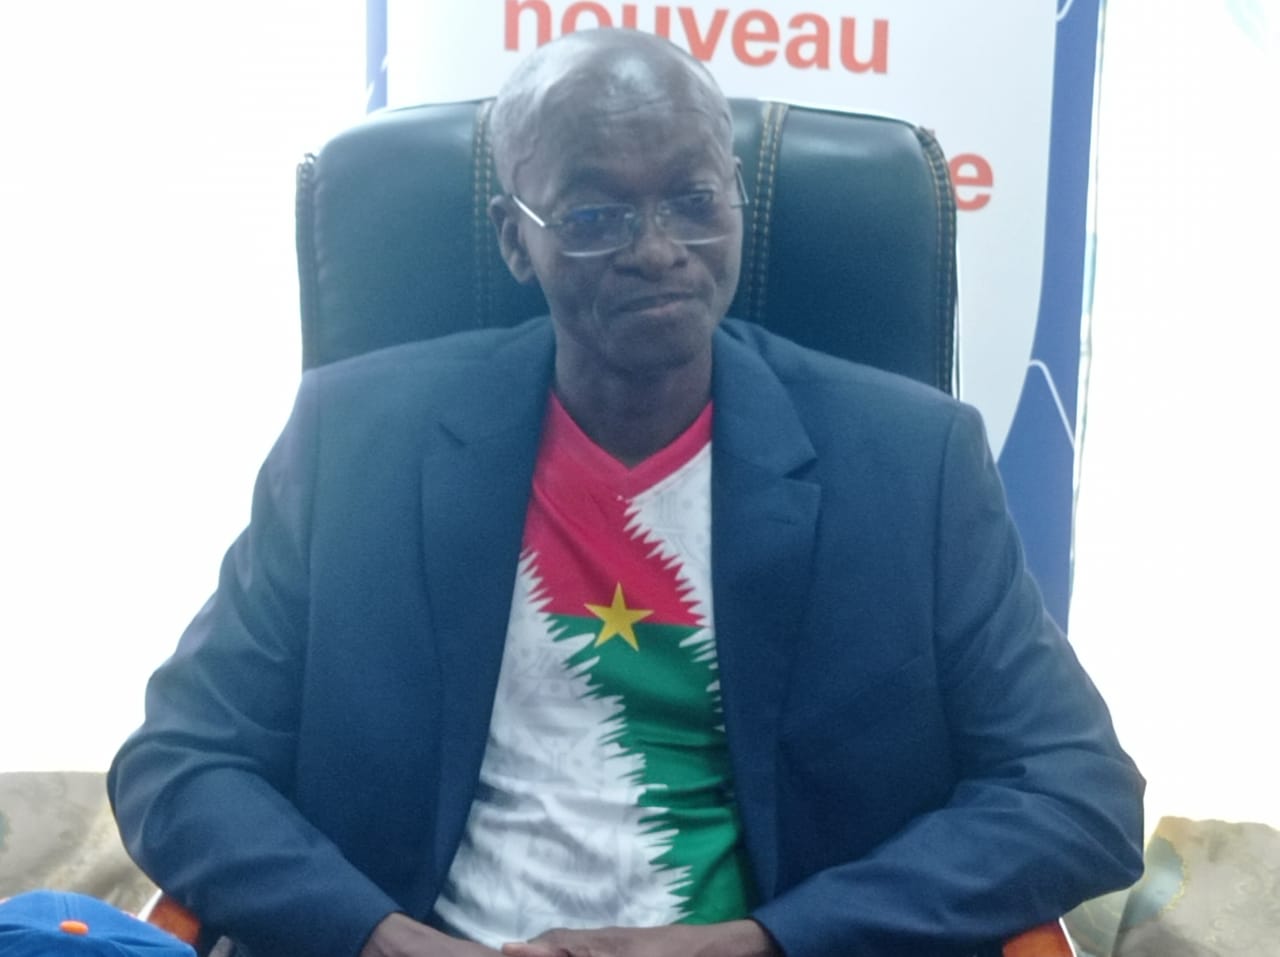 CAN 2023  Appel à la mobilisation pour porter le drapeau national au plus  haut sommet : Moov Africa Burkina apporte son soutien au Ministère des  Sports